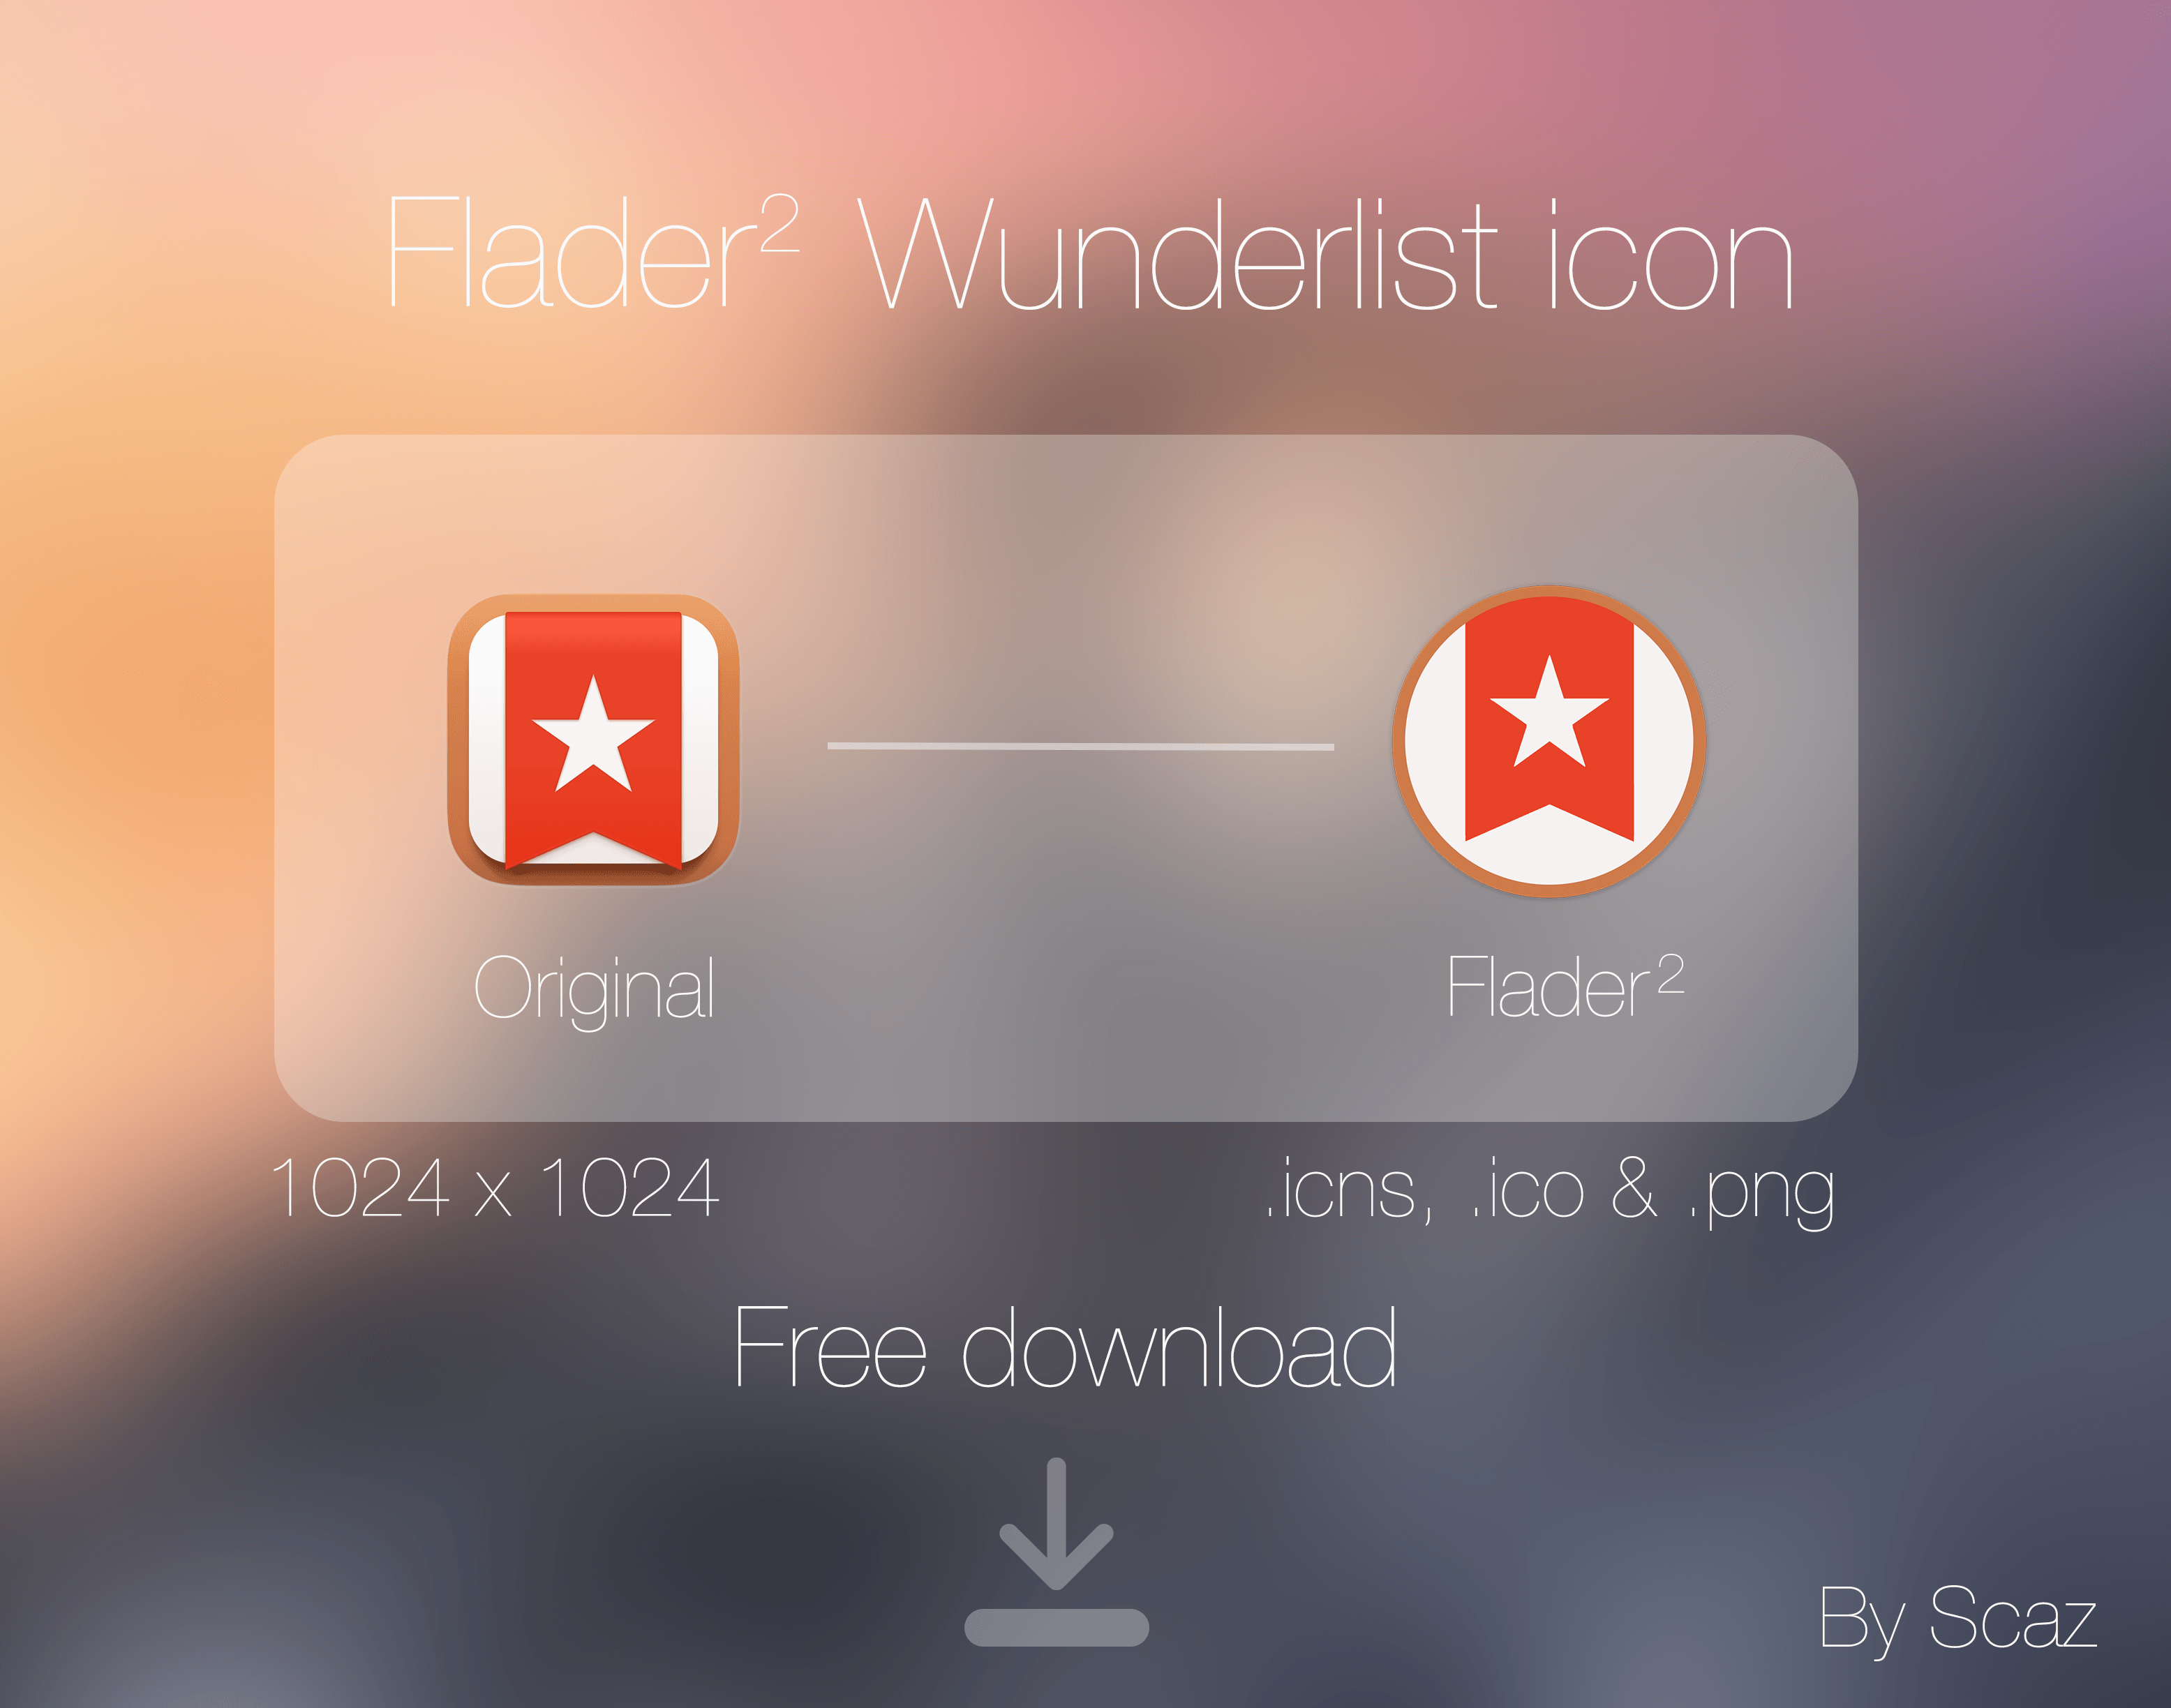 Wunderlist App Logo - Flader 2 : Wunderlist icon App